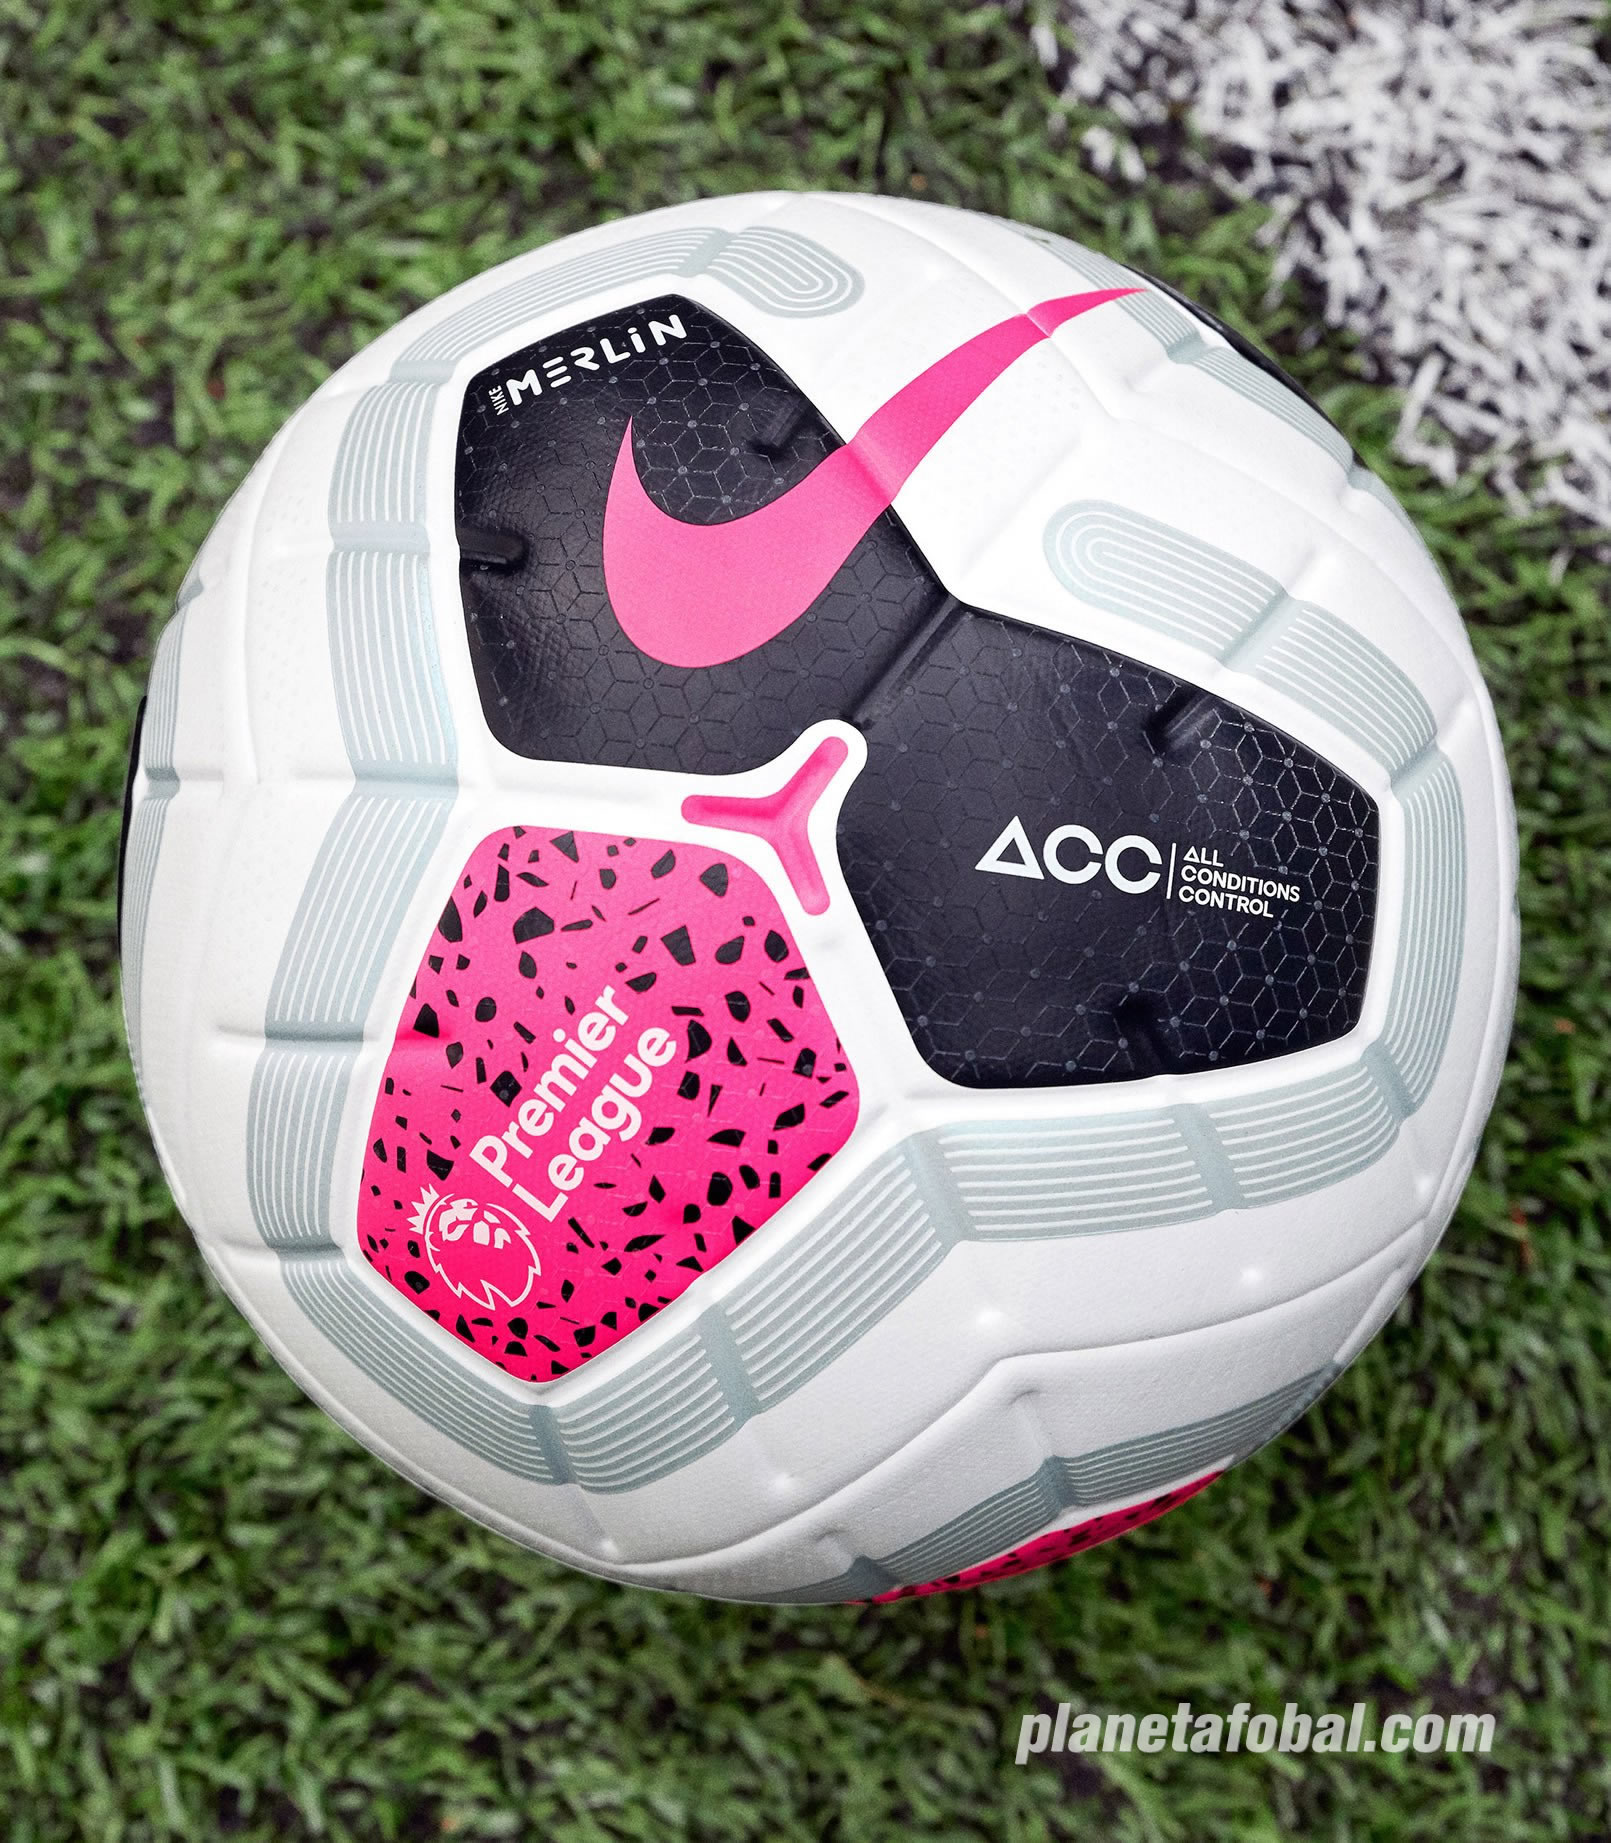 Balón Merlin Premier League 2019/20 | Imagen Nike